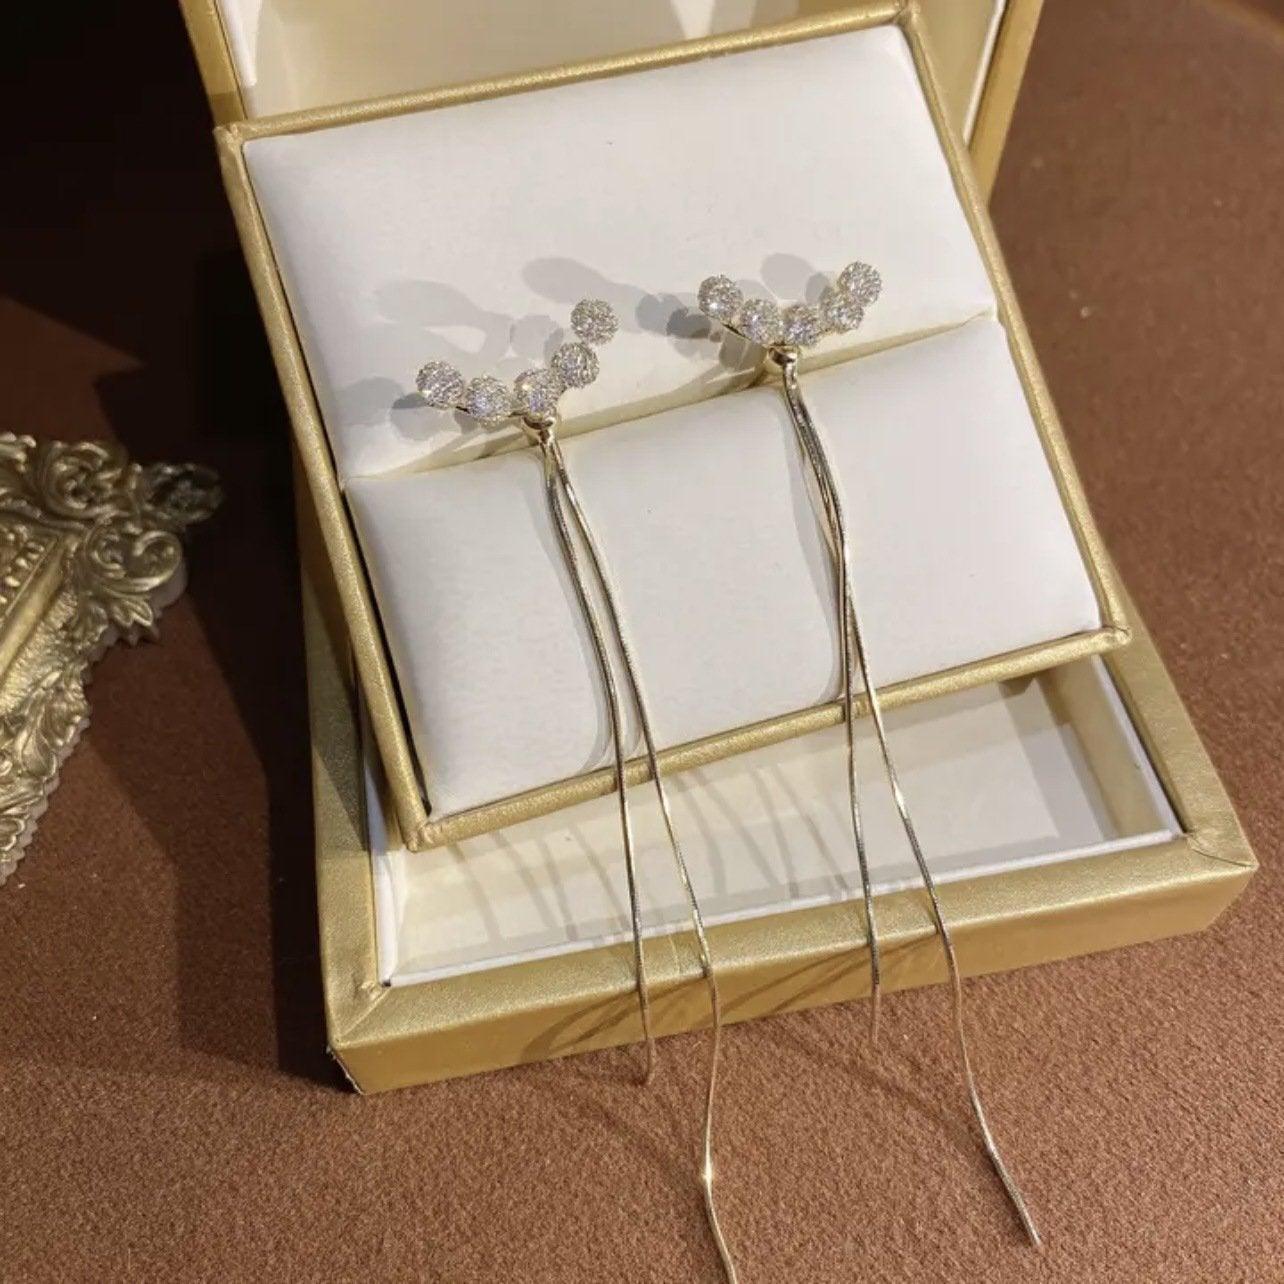 Five Diamonds Long Tassel Earrings